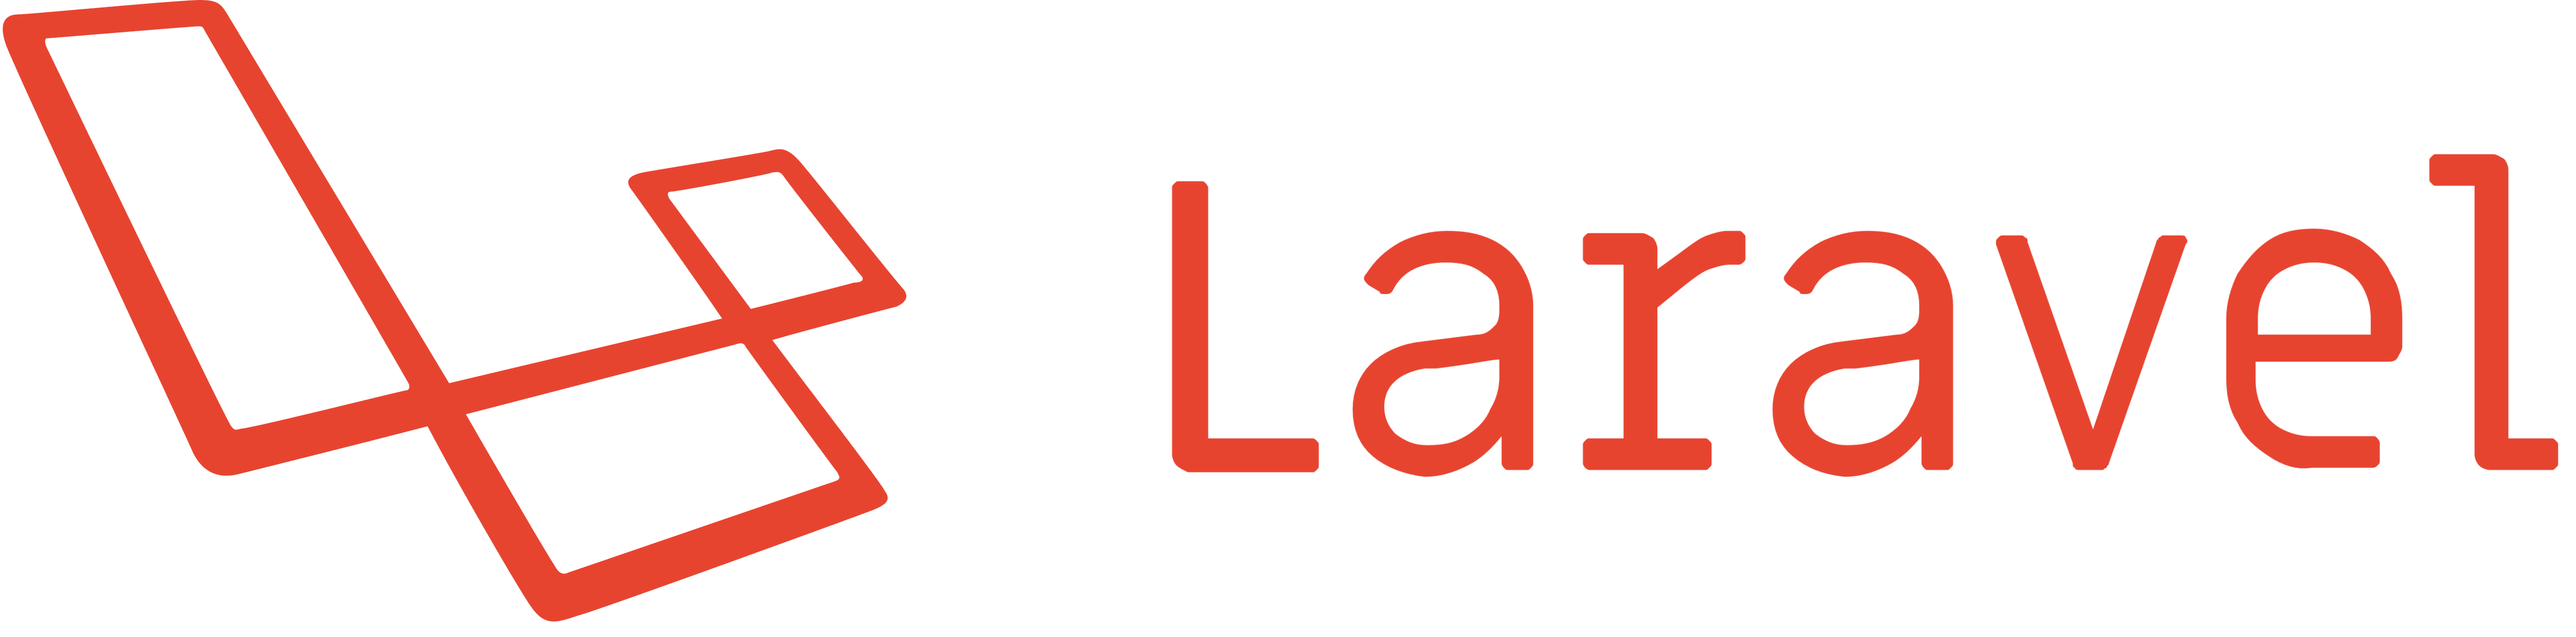 Laravel_logo_wordmark_logotype.png